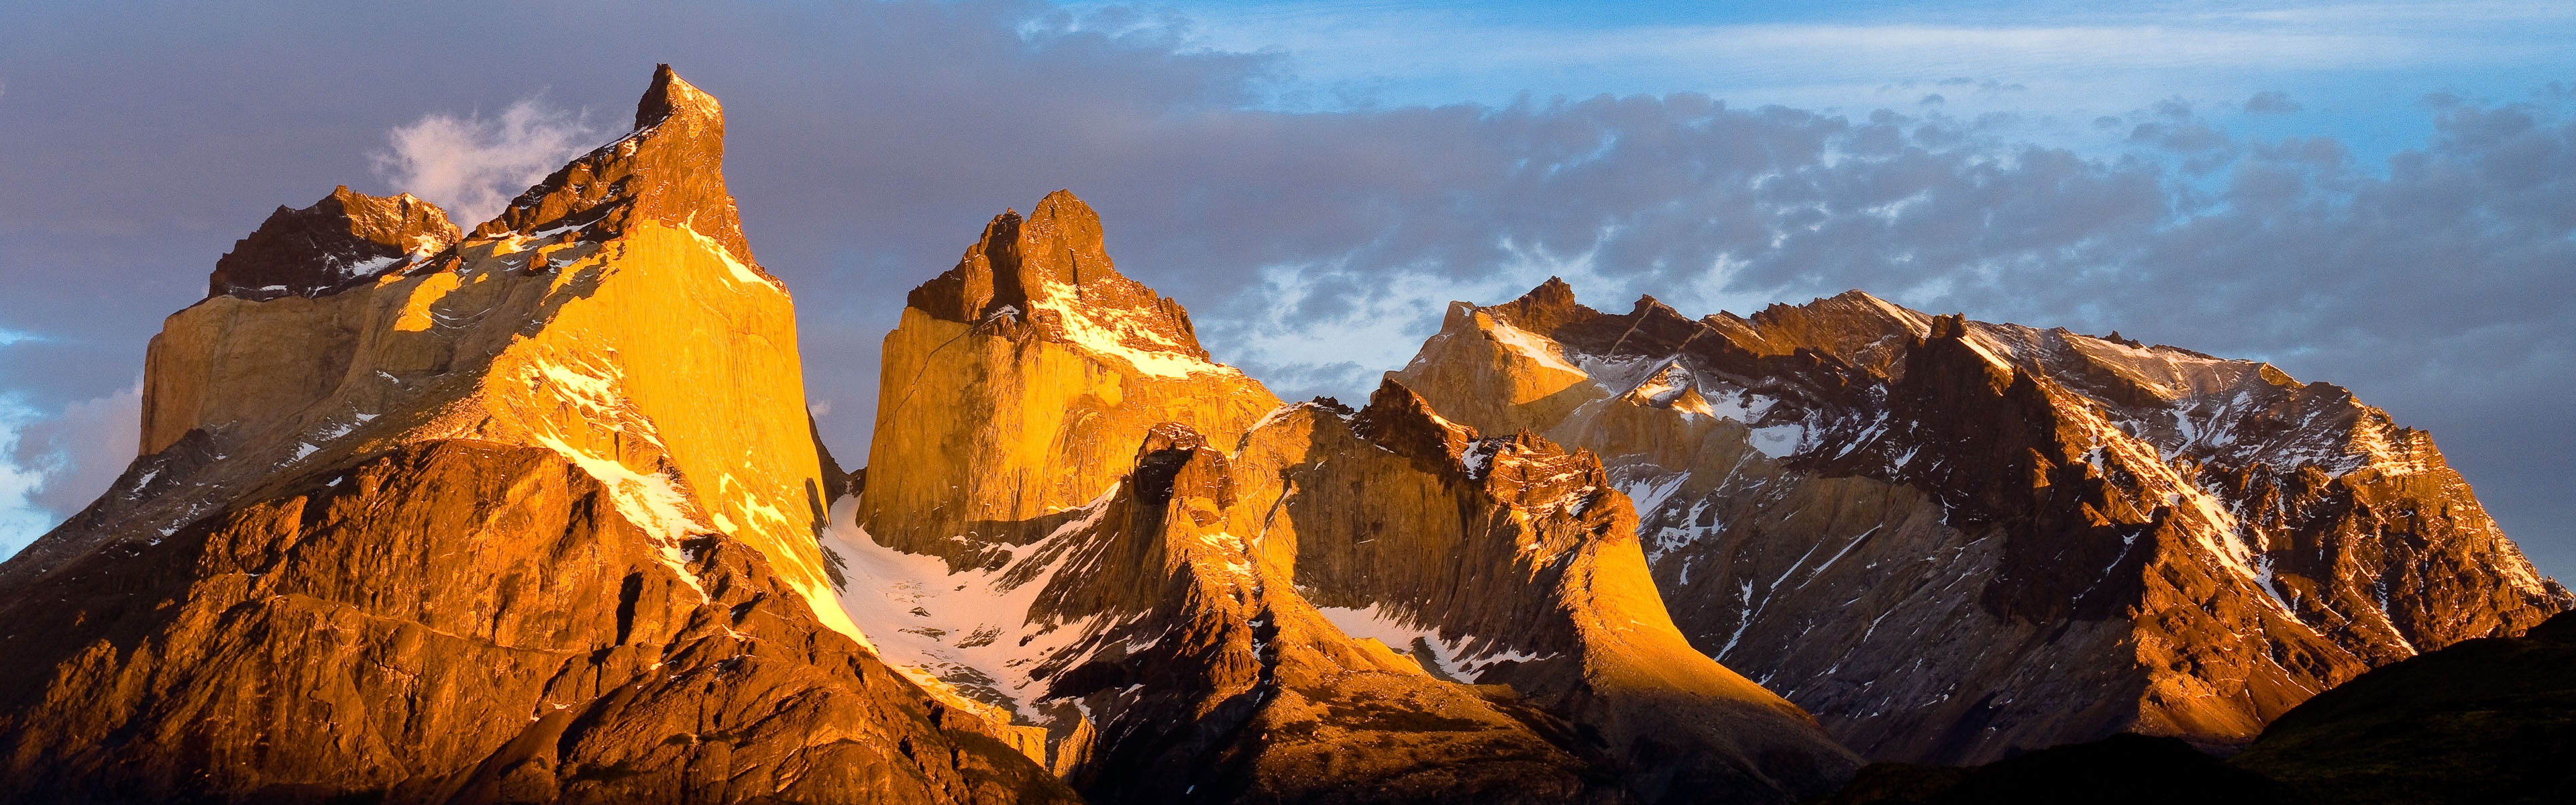 Windows 8 offiziellen Panorama Tapete, Wellen, Wälder, majestätische Berge #15 - 3840x1200